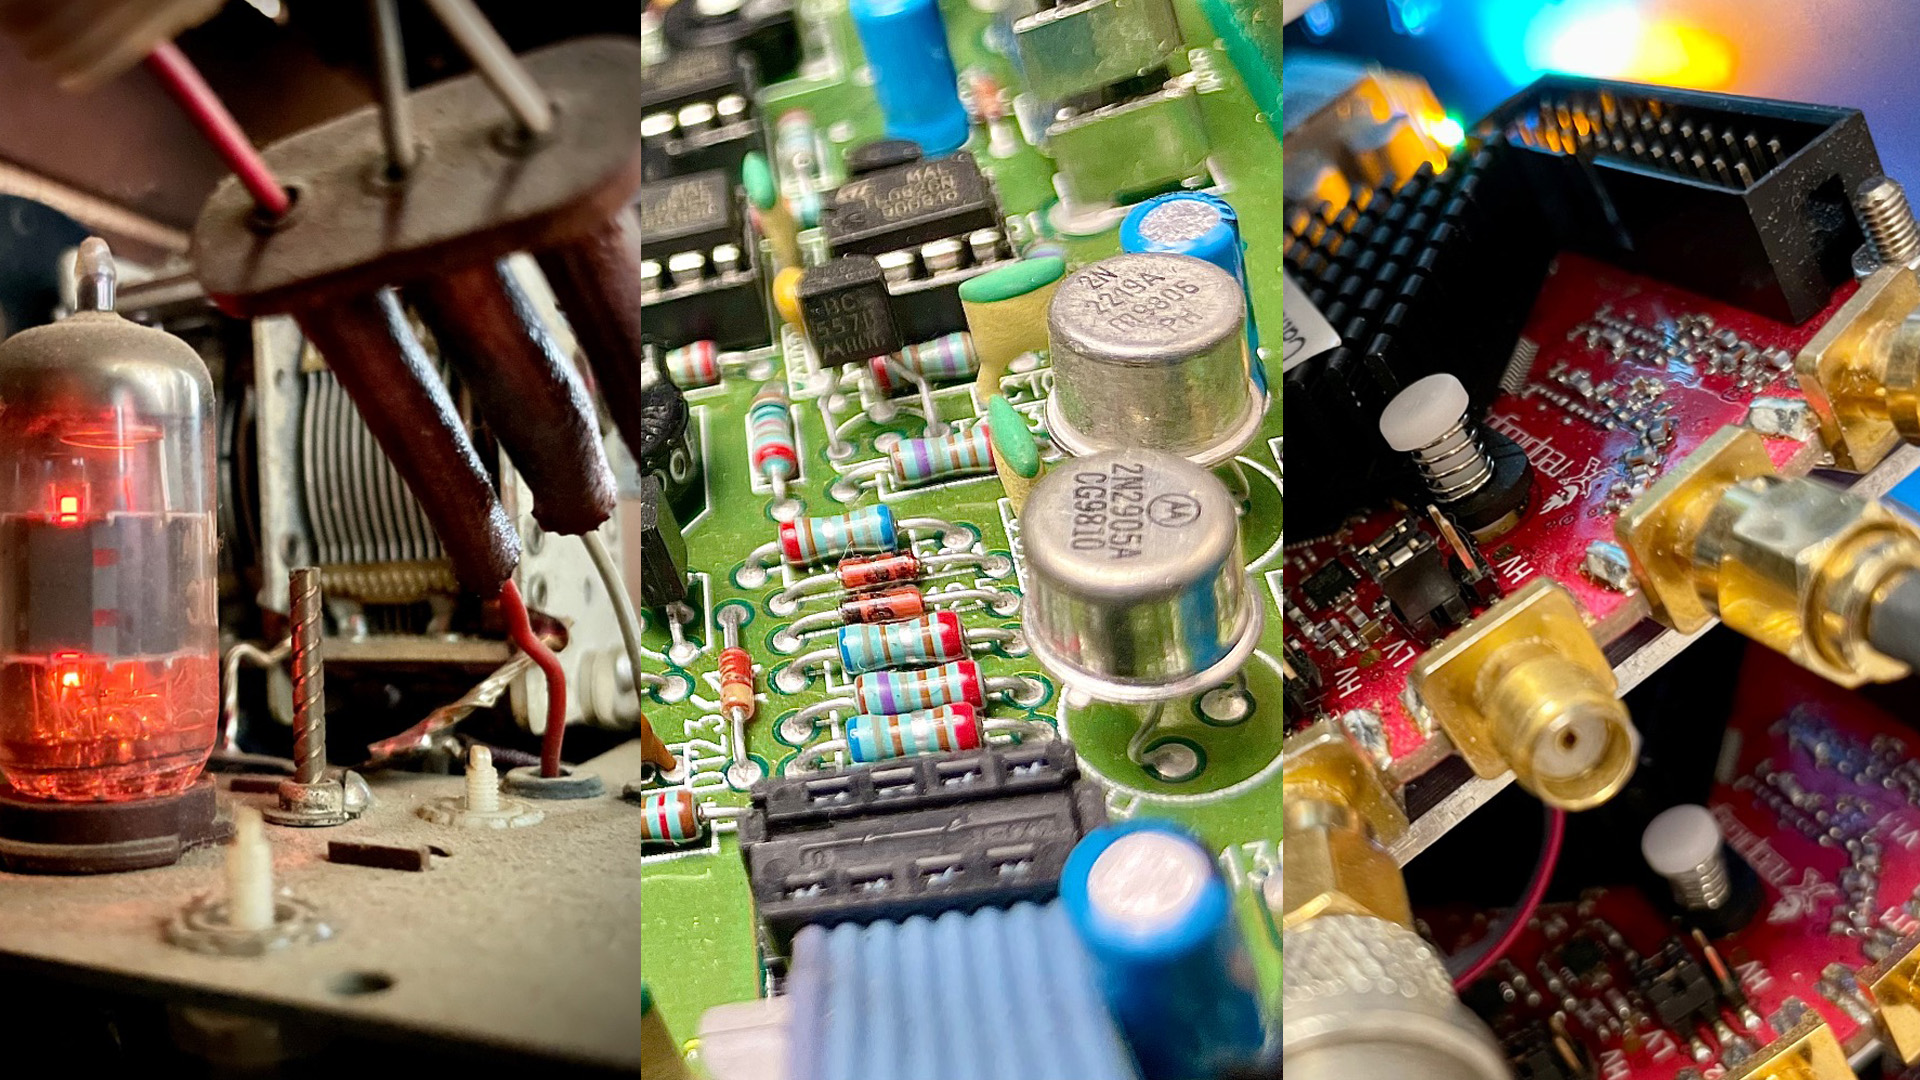 En tur rundt i laboratoriets gemmer giver et indblik i transistorens udvikling. (venstre) Det karakteristisk glødende radiorør, der var forløberen for transistoren og som stadig findes i f.eks gamle radioer og rørforstærkere. (midten) 2N2905A og BC557B er eksempler på enkelte transistorer, der bruges som hhv. tænd-sluk kontakt og forstærker. (højre) Red Pitaya boards med FPGA og en moderne ARM processor, der indeholder mere end 20 millioner transistorer. Fotos: Ulrich Hoff.